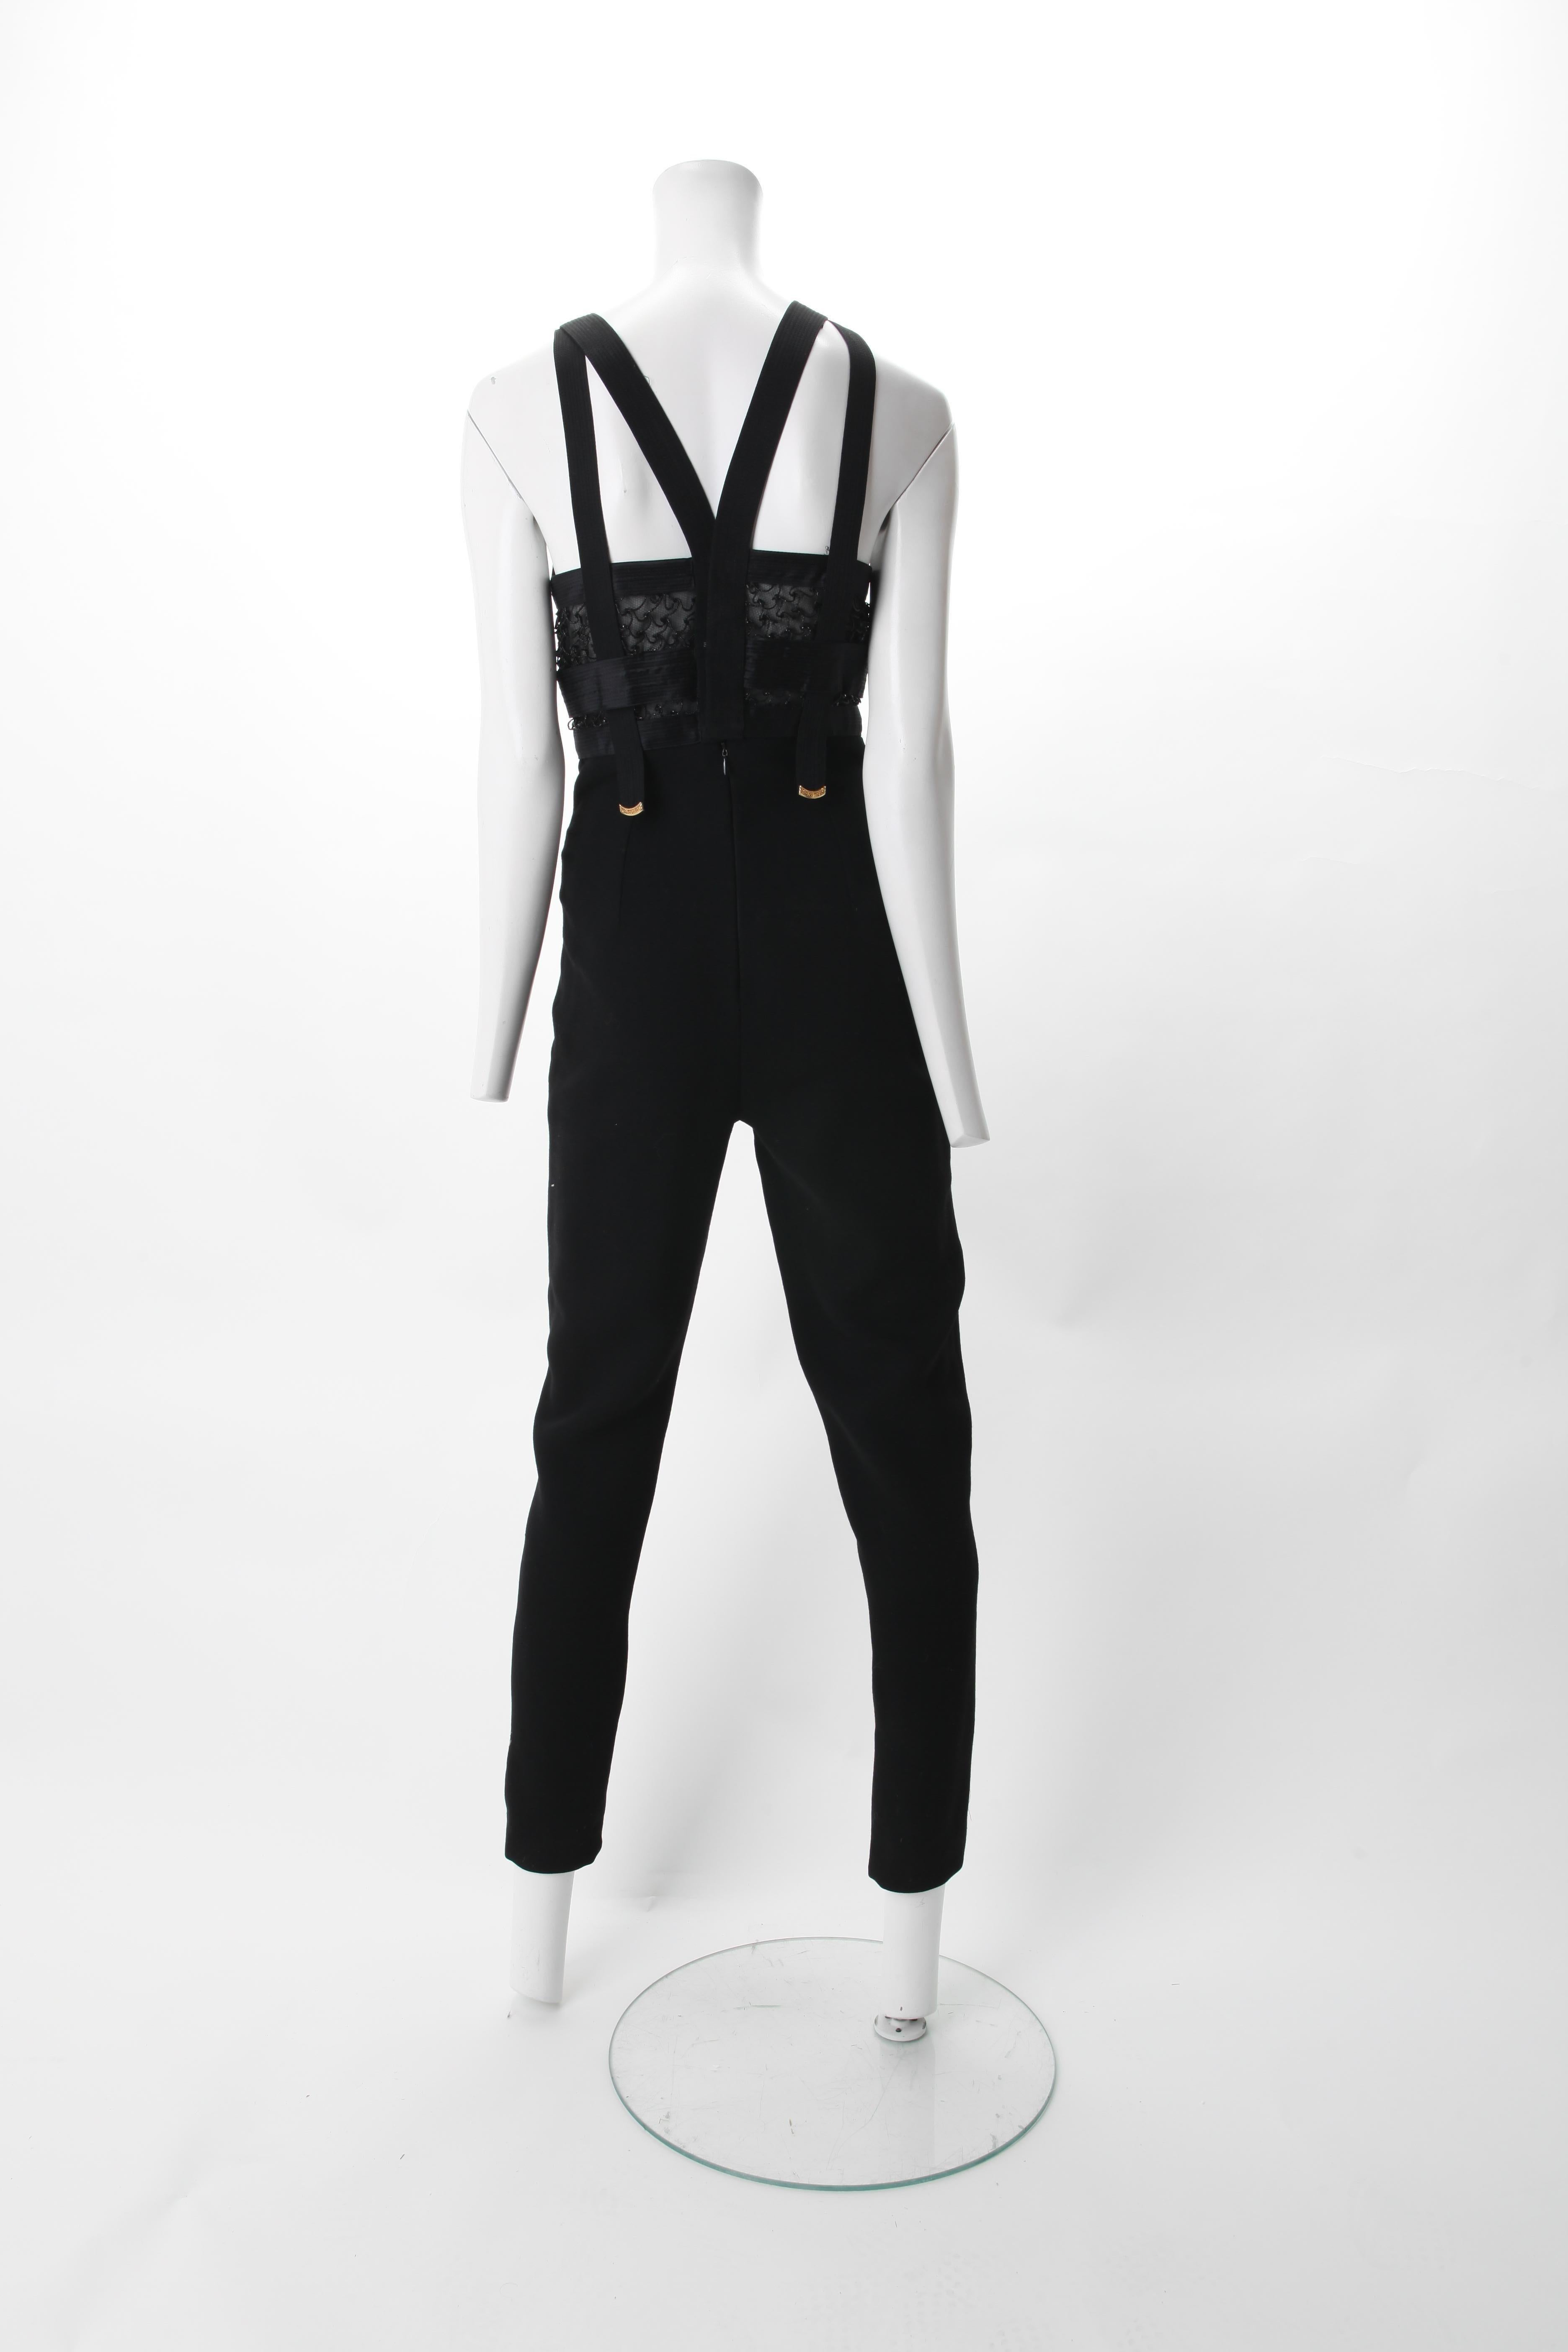 versace black jumpsuit